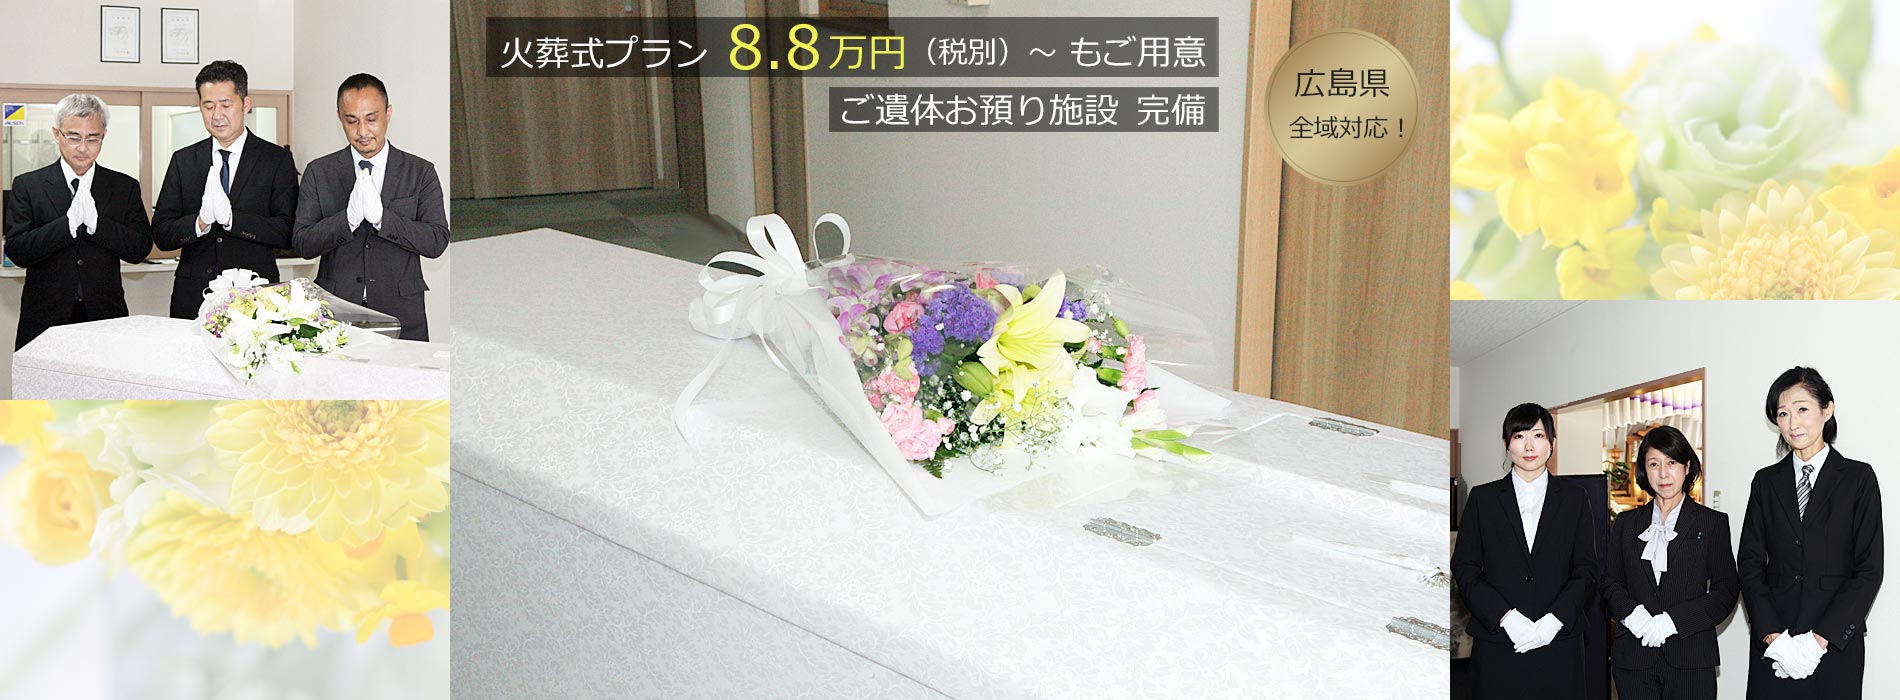 広島の家族葬・小さなお葬式・福祉葬